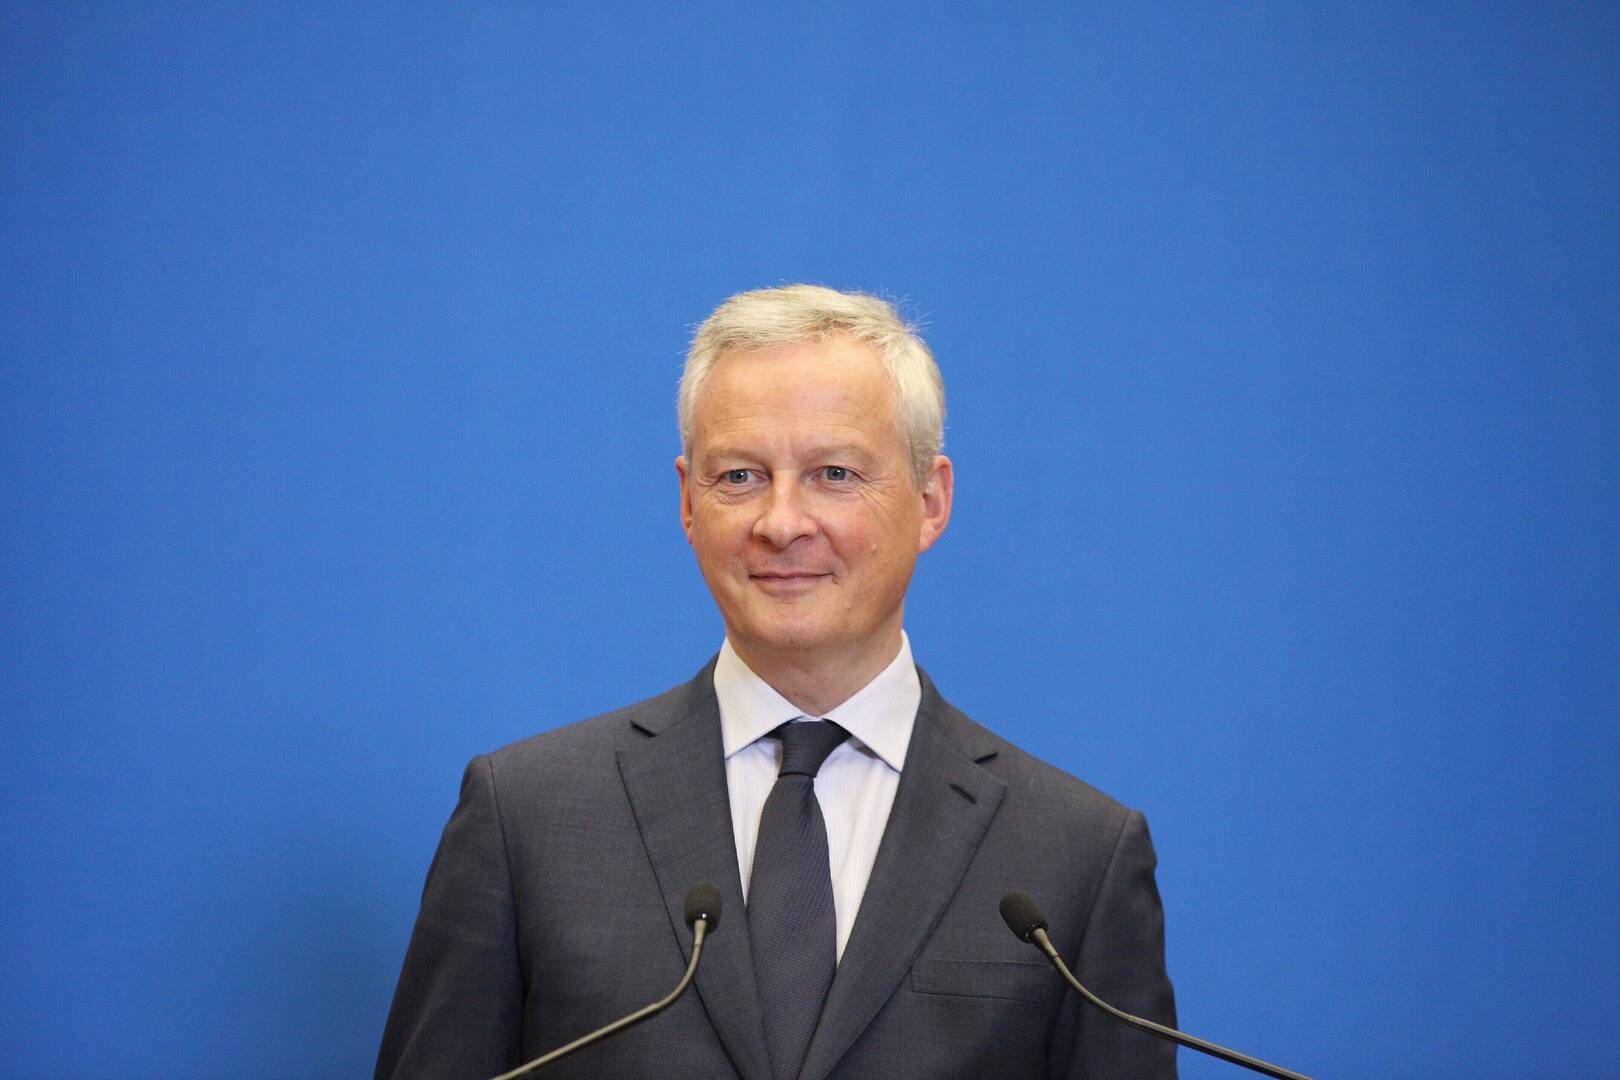 وزير المالية الفرنسي يطالب بإنهاء الصراع في أوكرانيا بسبب الأضرار الاقتصادية